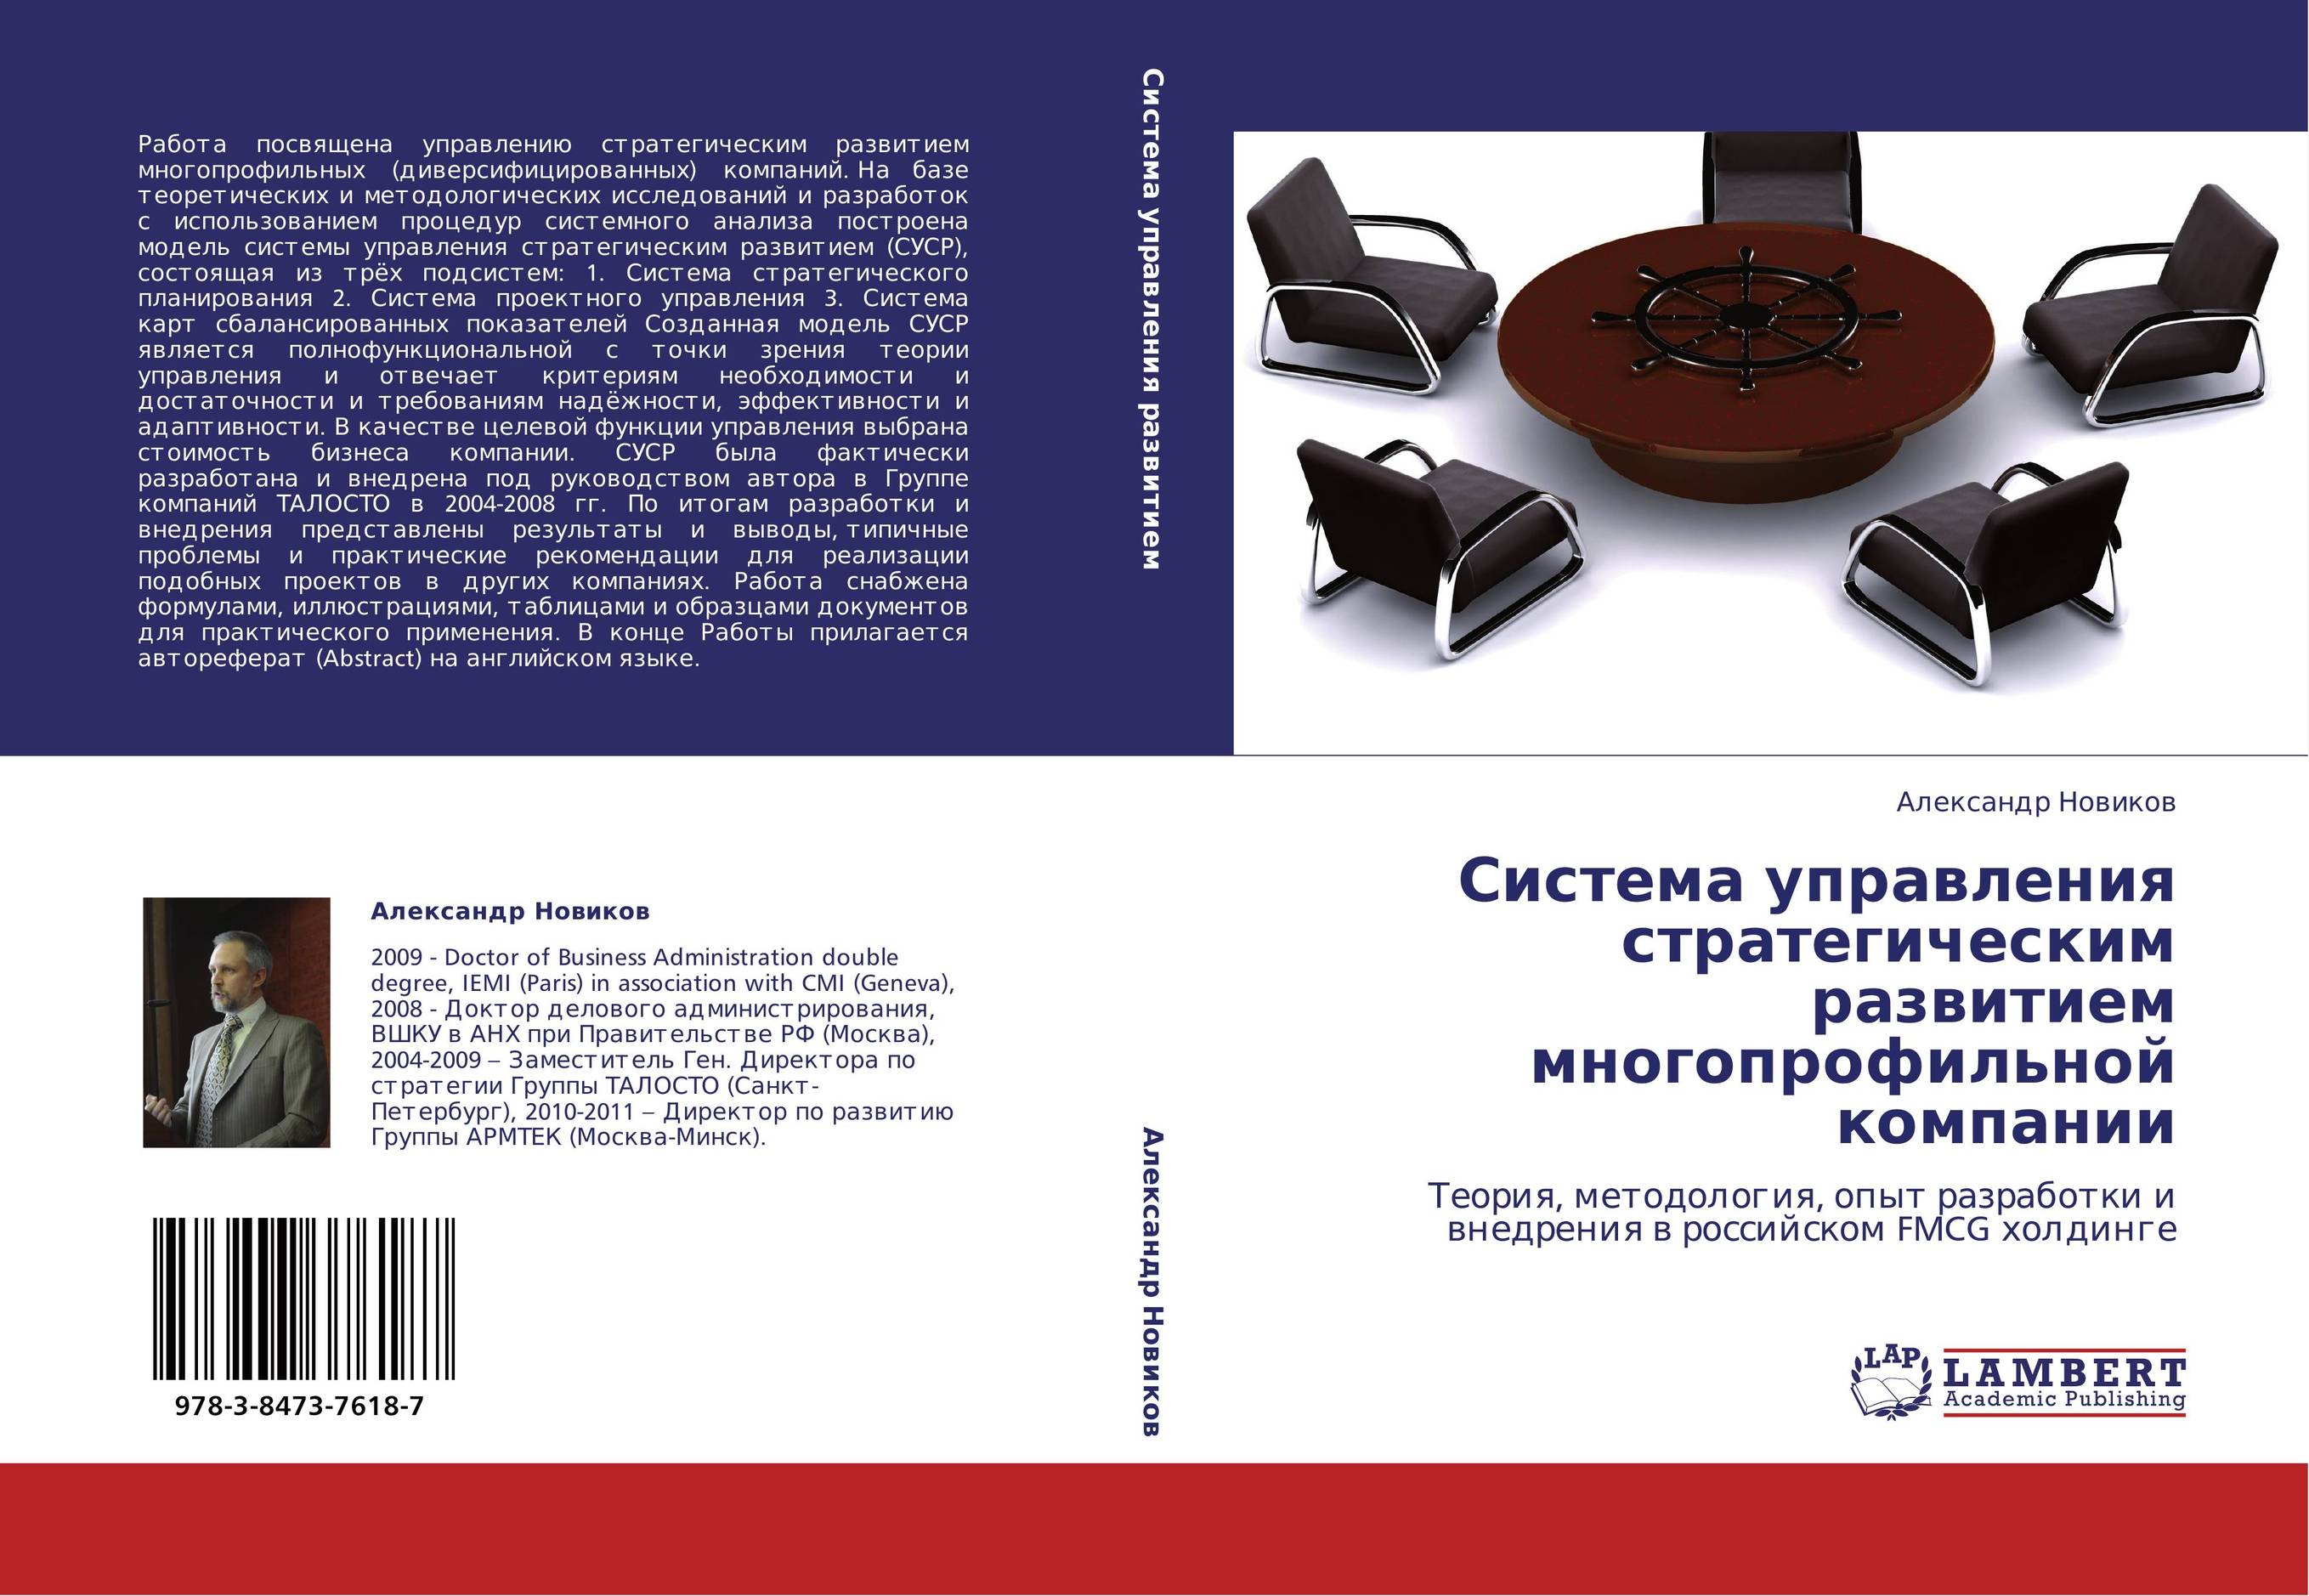 Система управления стратегическим развитием многопрофильной компании. Теория, методология, опыт разработки и внедрения в российском FMCG холдинге.